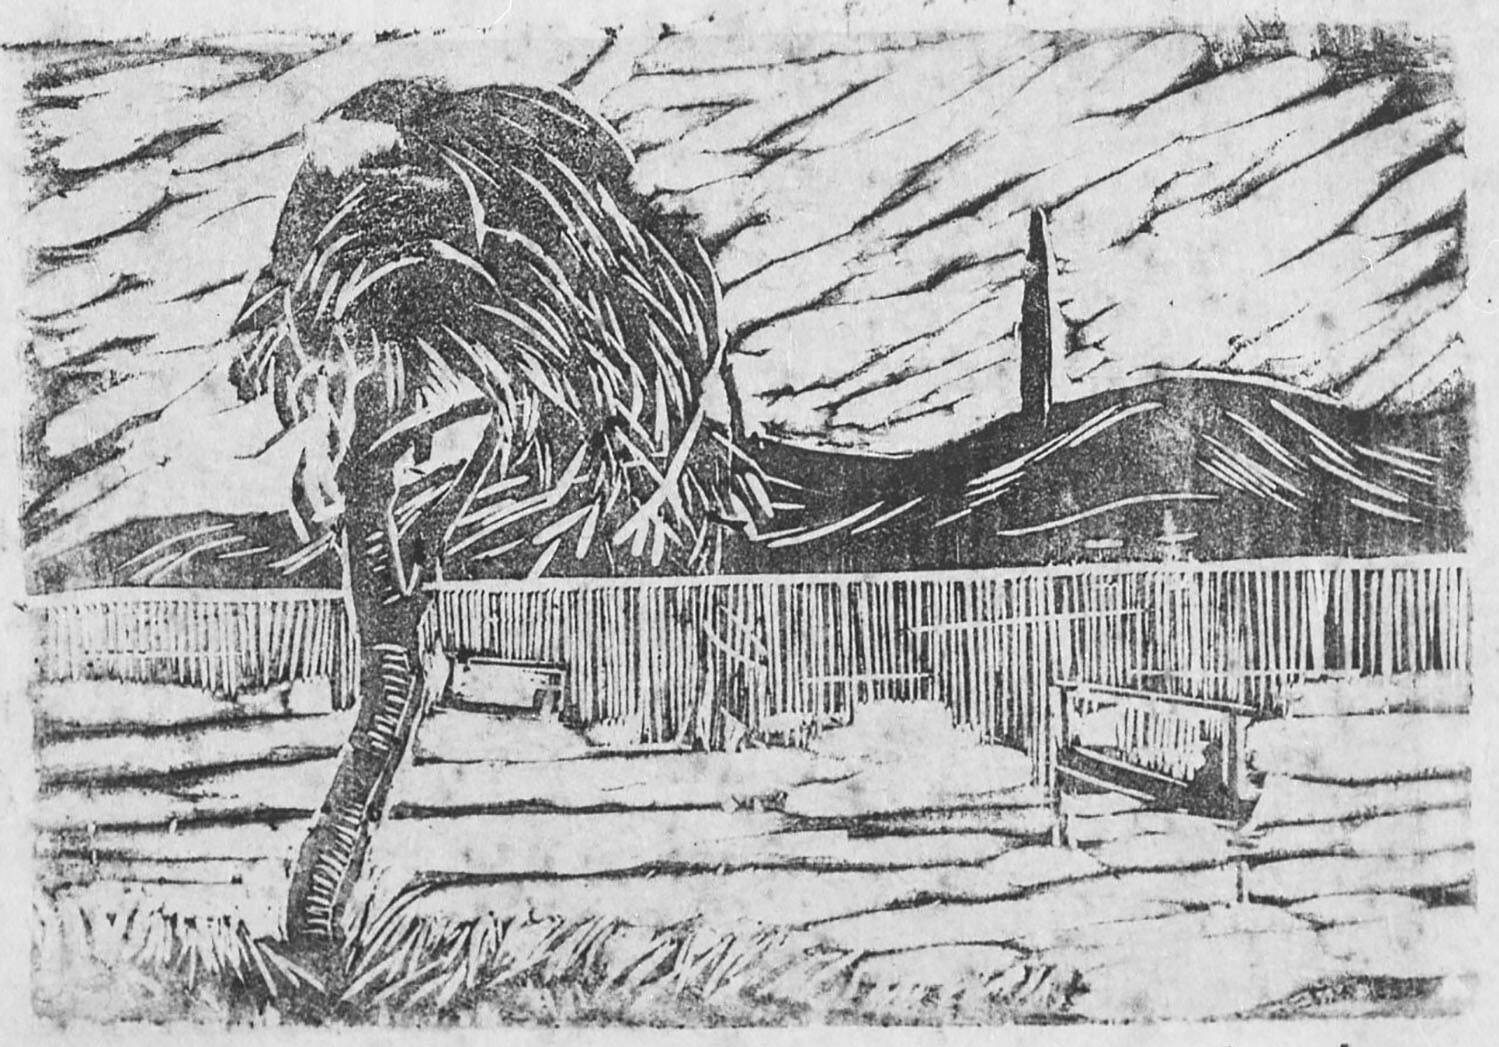 鄭洛耶(鄭川谷) 《風景》 1931年
木版、紙 神奈川県立近代美術館